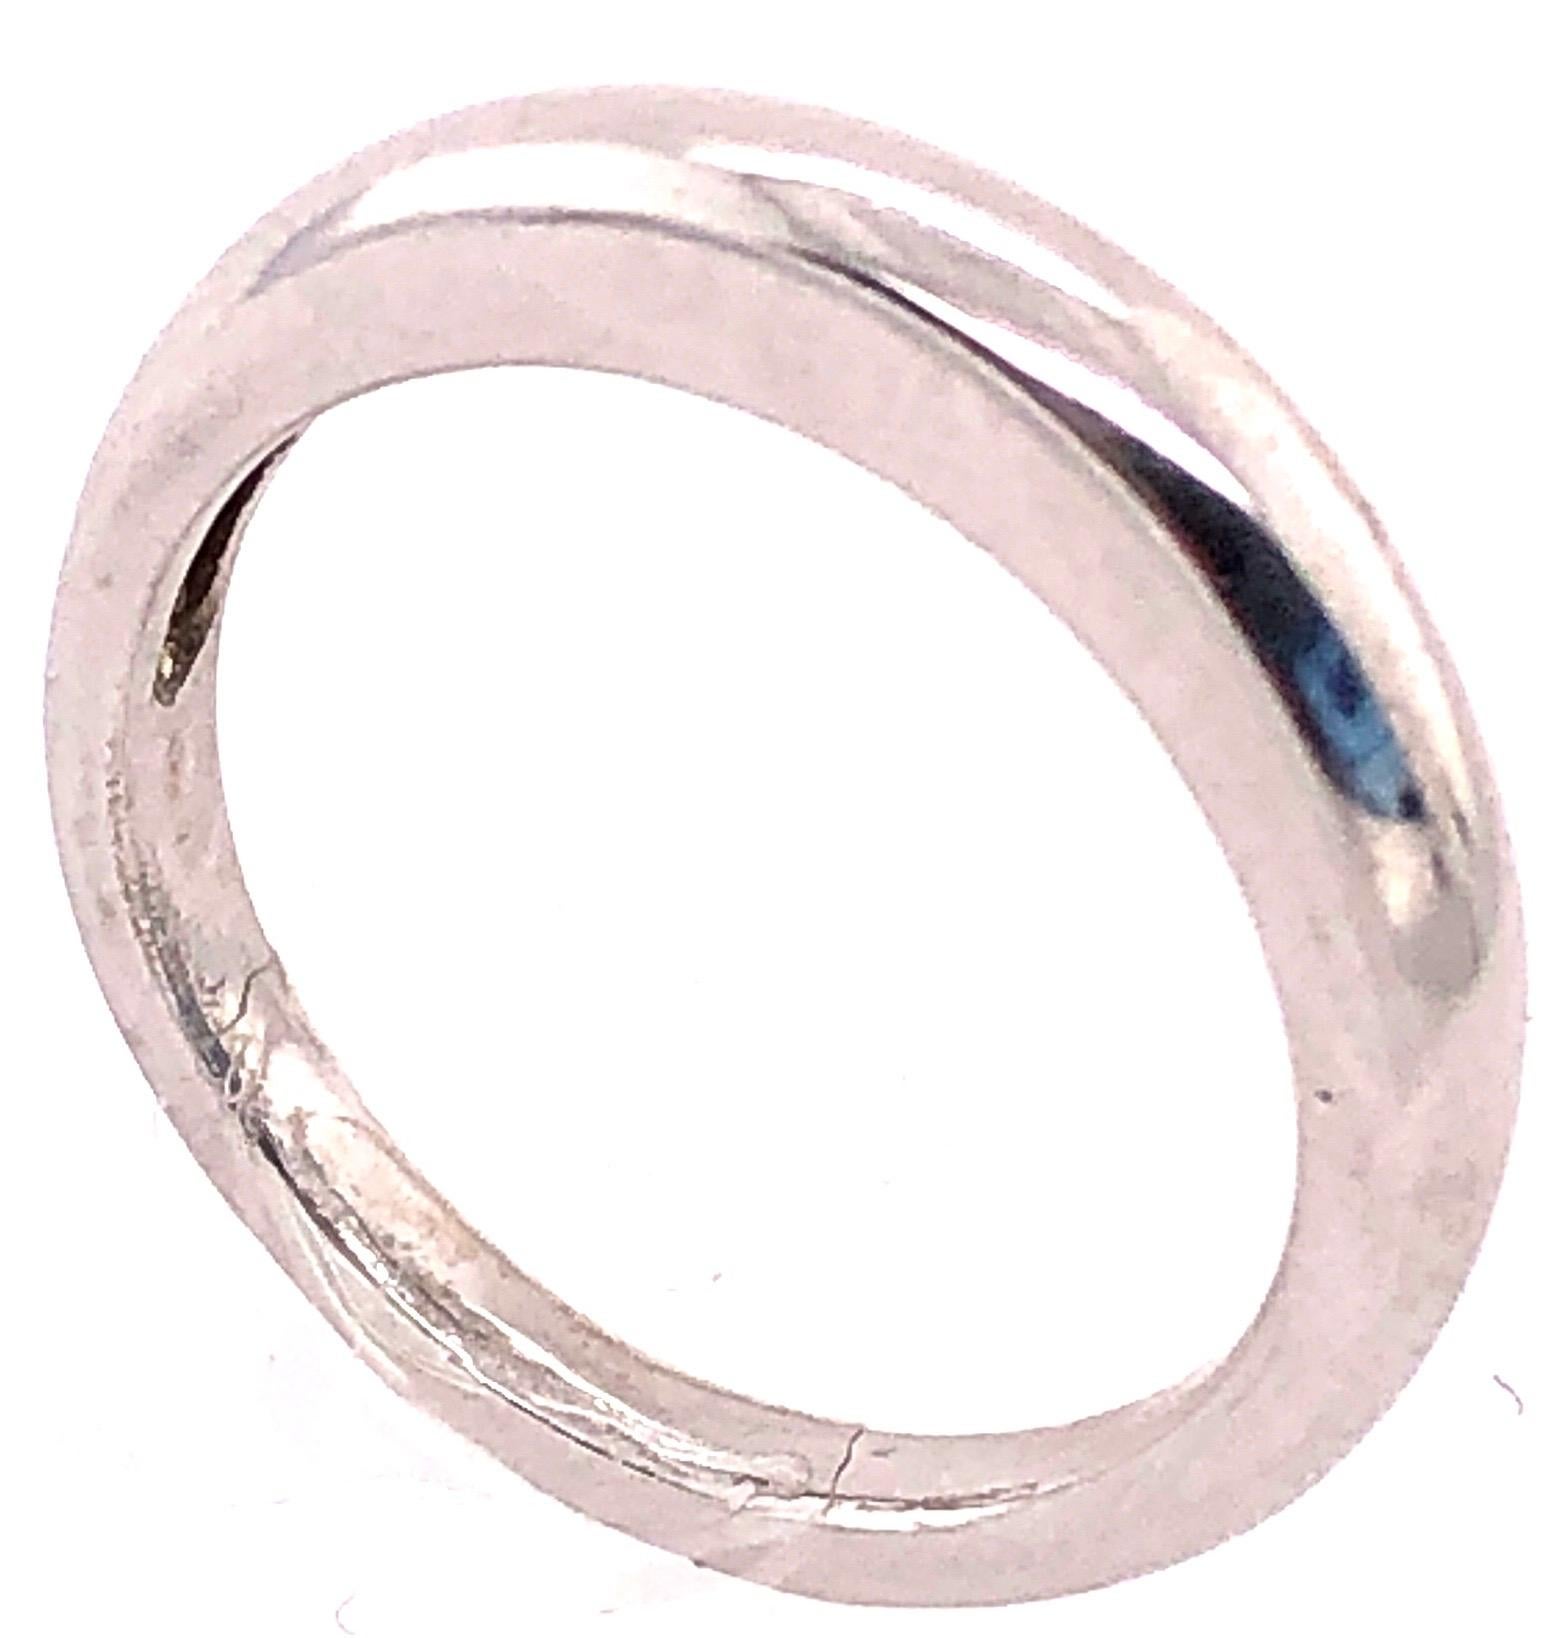 14 Karat White Gold Band/Wedding Ring.
Size 7
4.41 grams total weight.